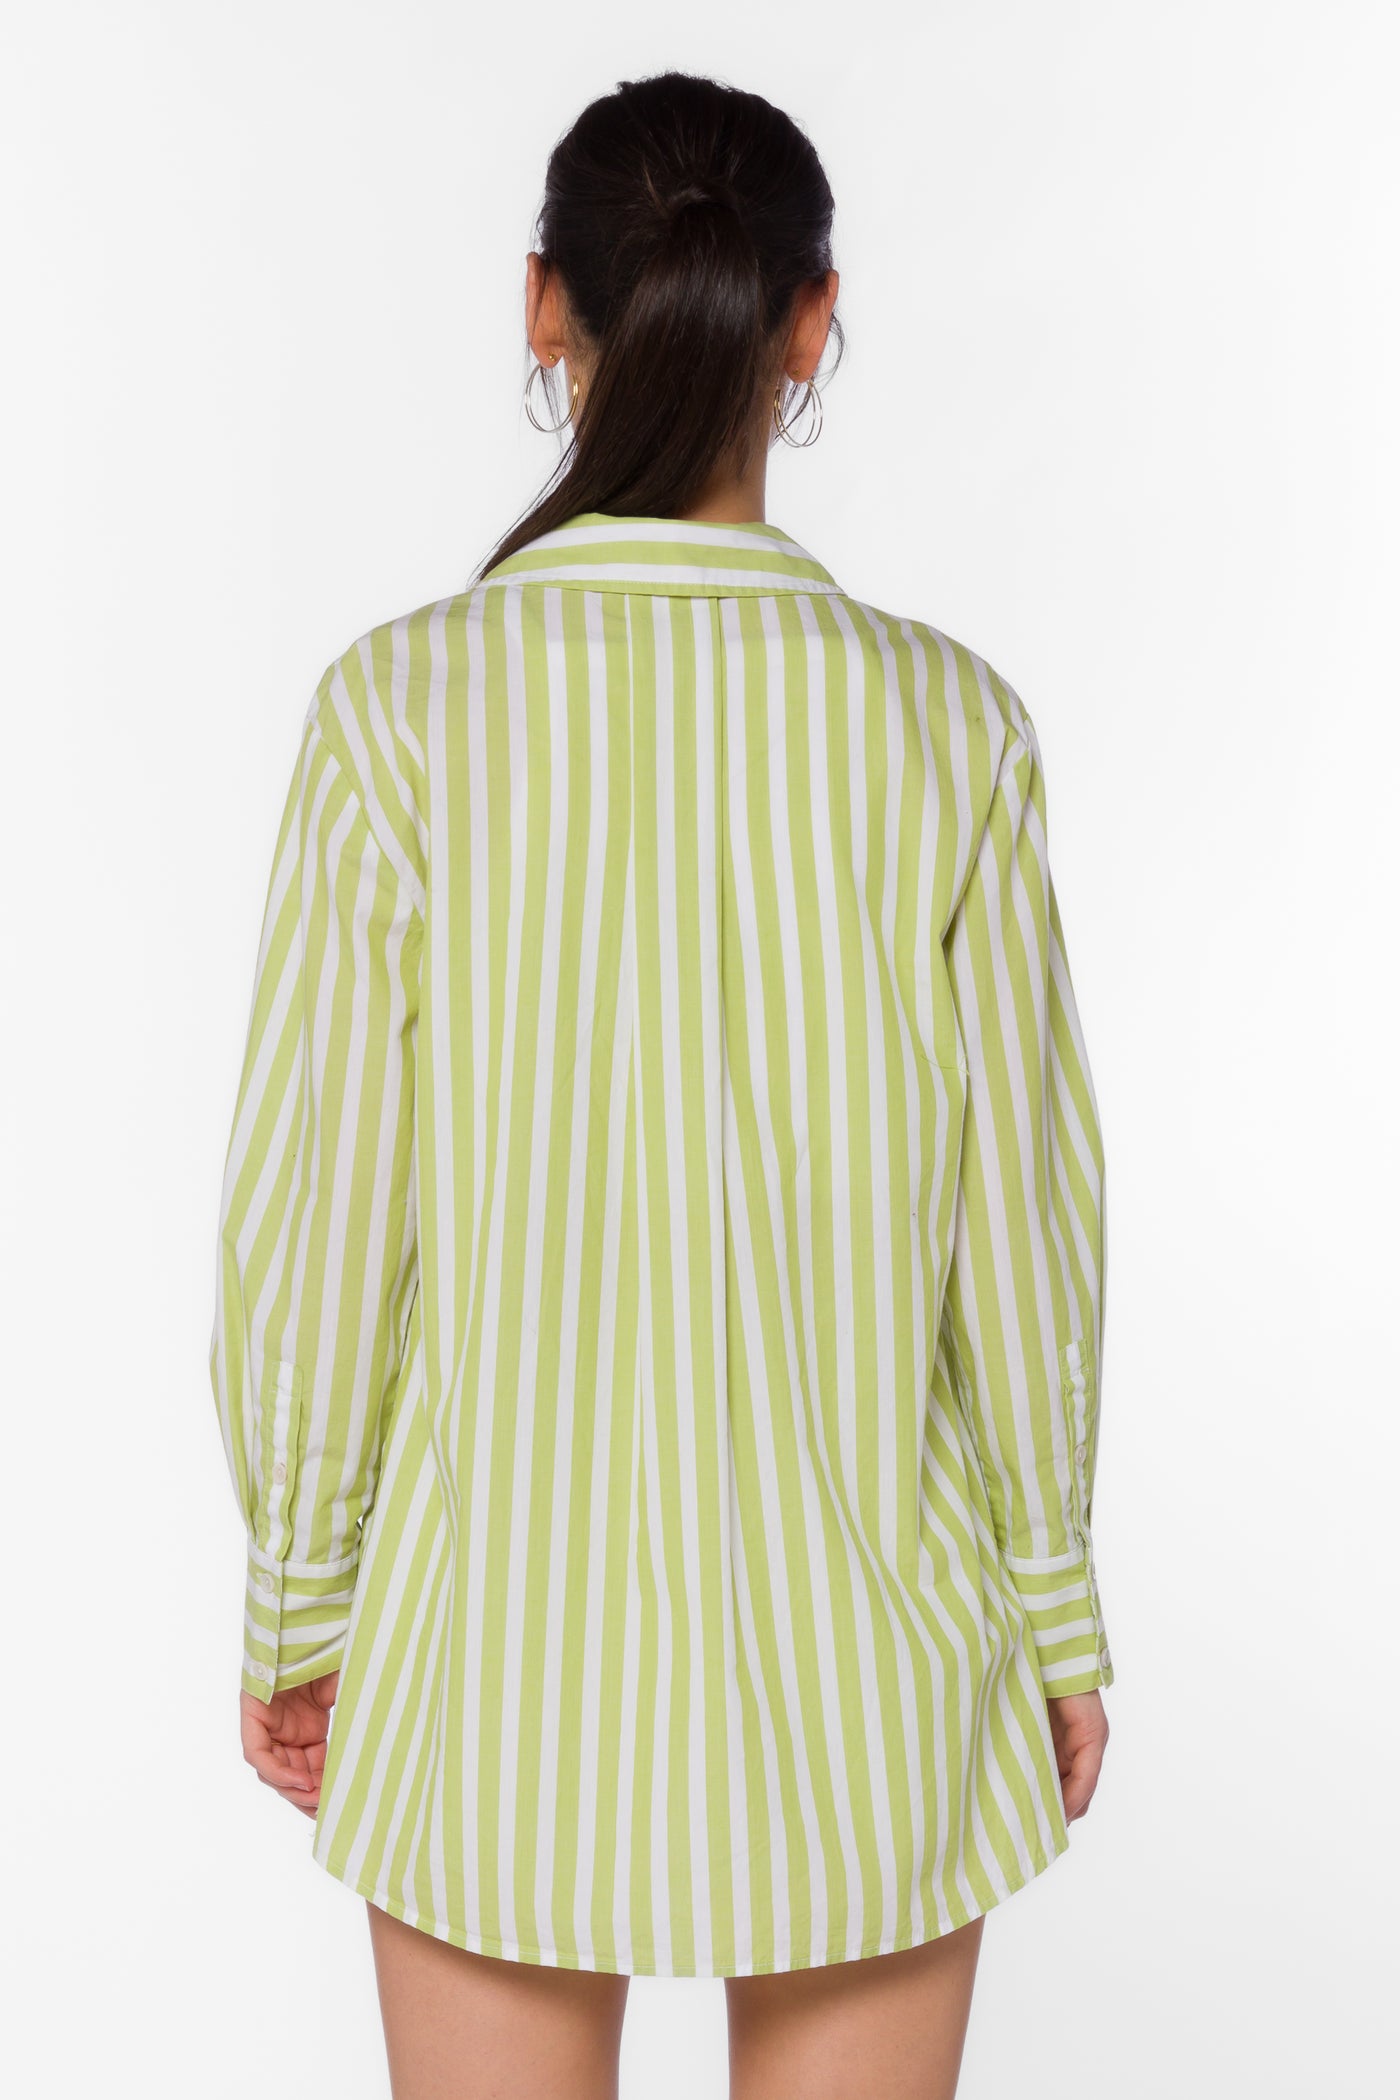 Westerly Citron White Stripe Shirt - Tops - Velvet Heart Clothing